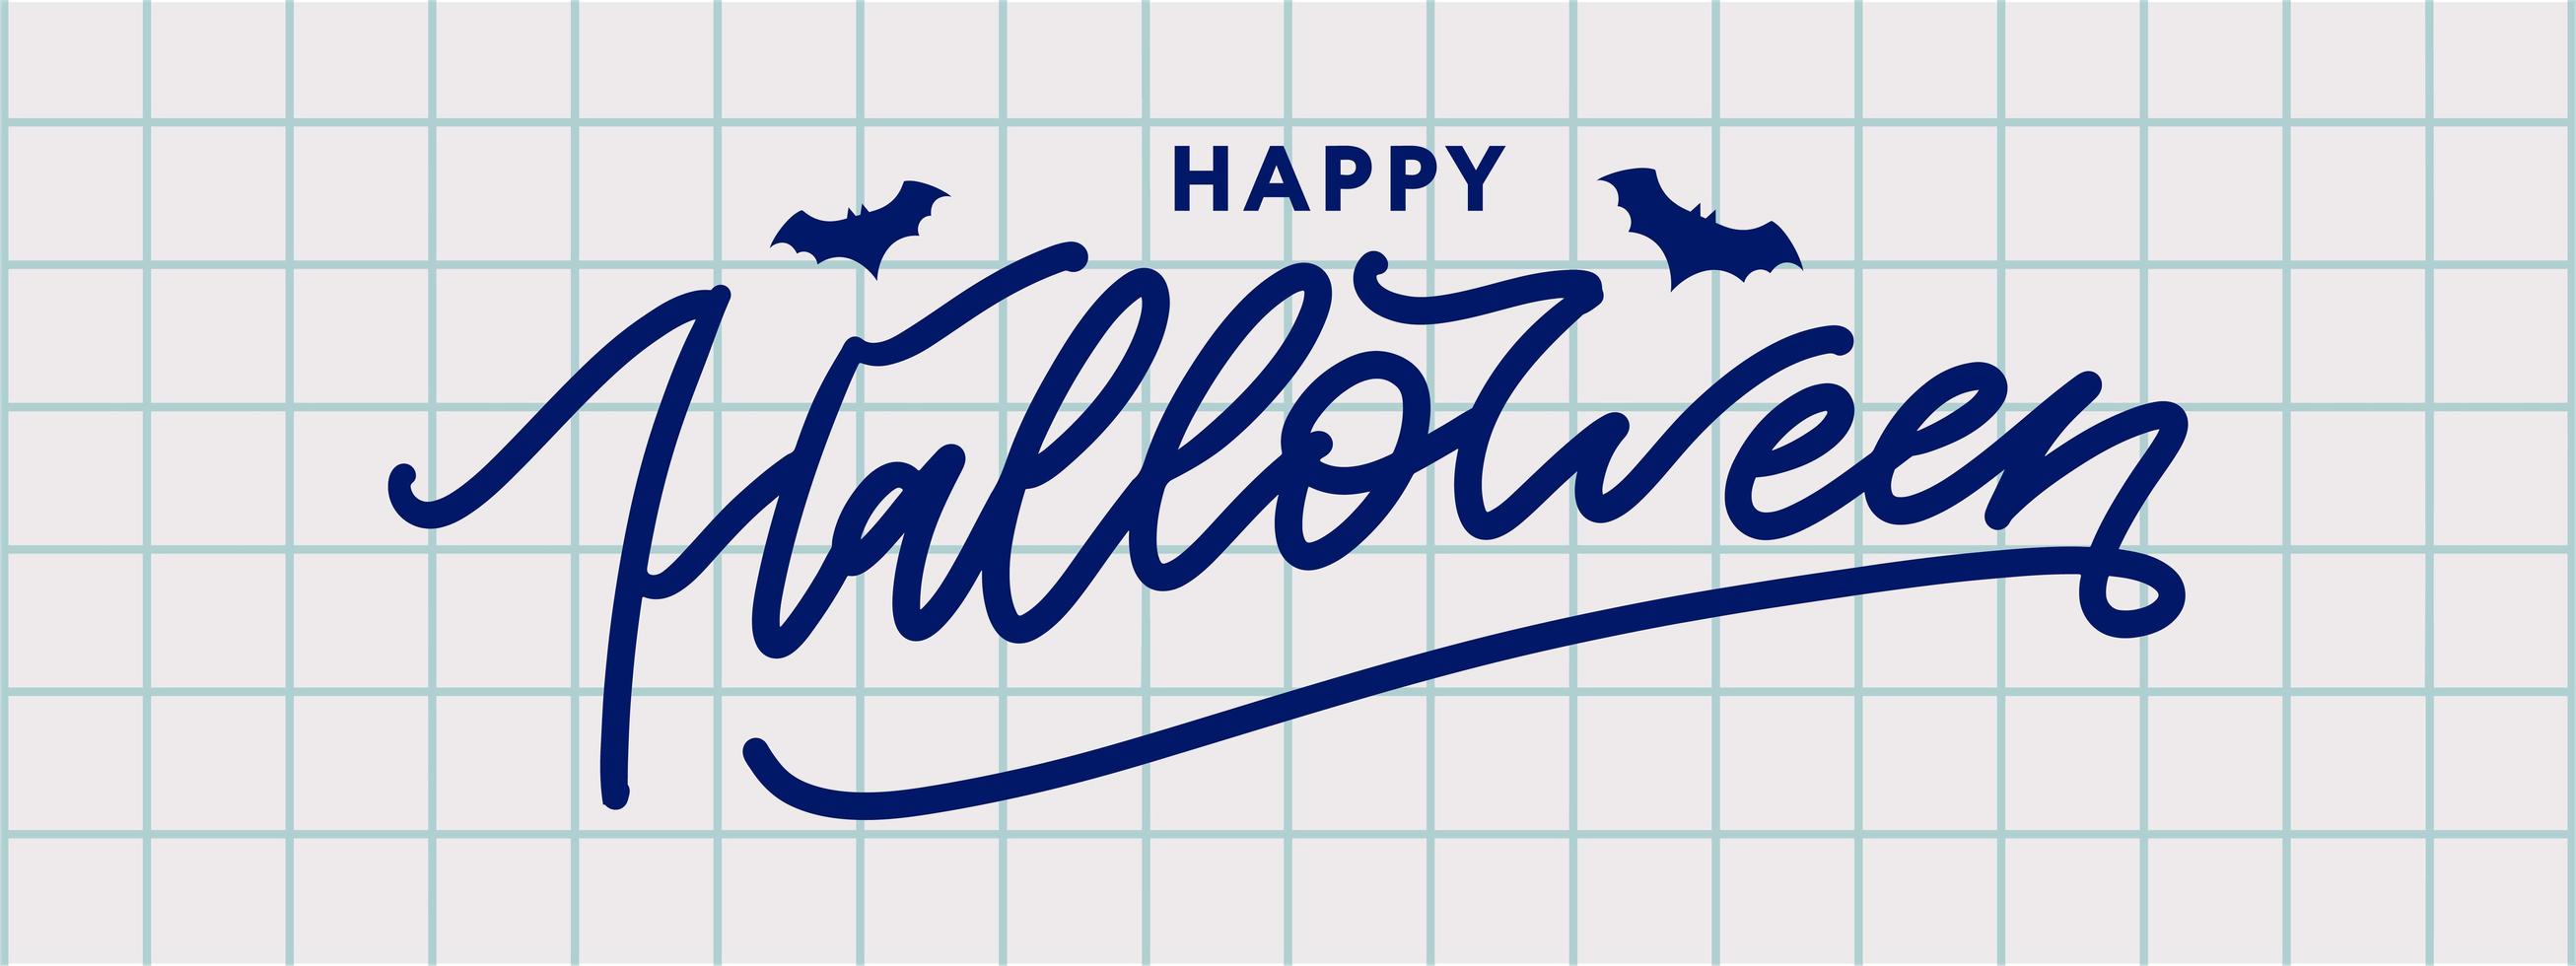 felice halloween banner testo scritte offerta speciale per le vacanze acquista ora vettore